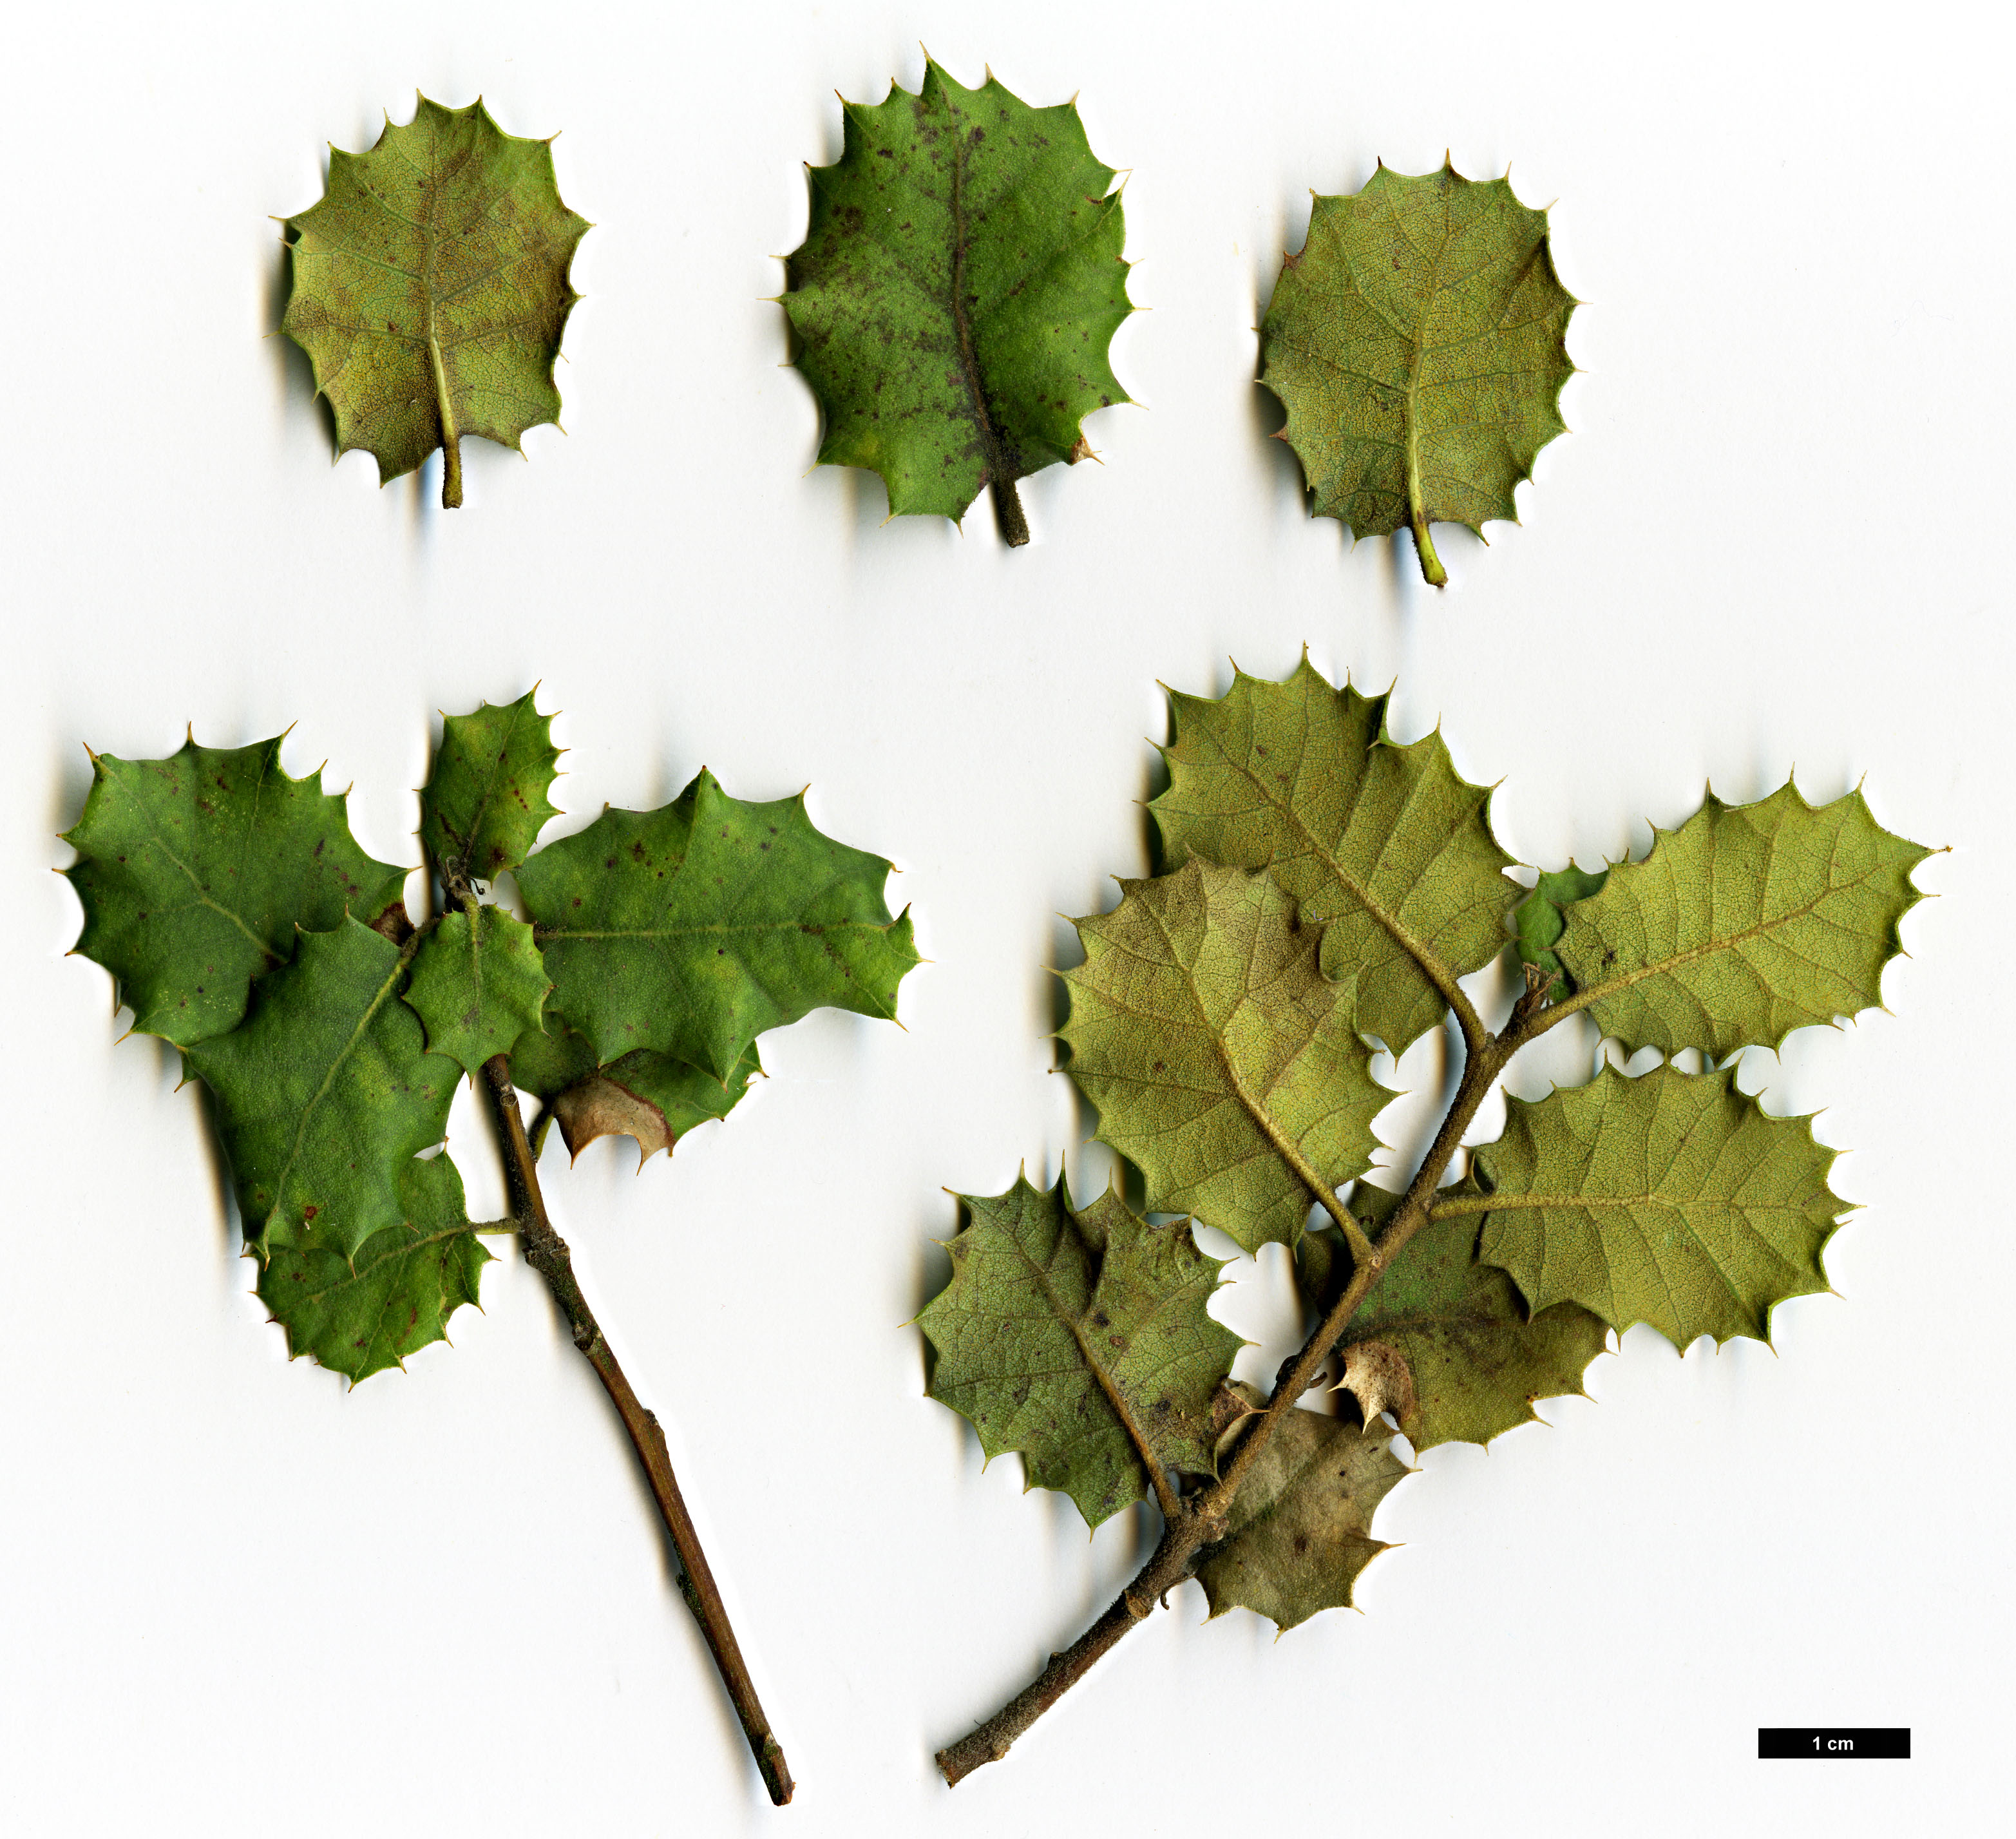 High resolution image: Family: Fagaceae - Genus: Quercus - Taxon: palmeri